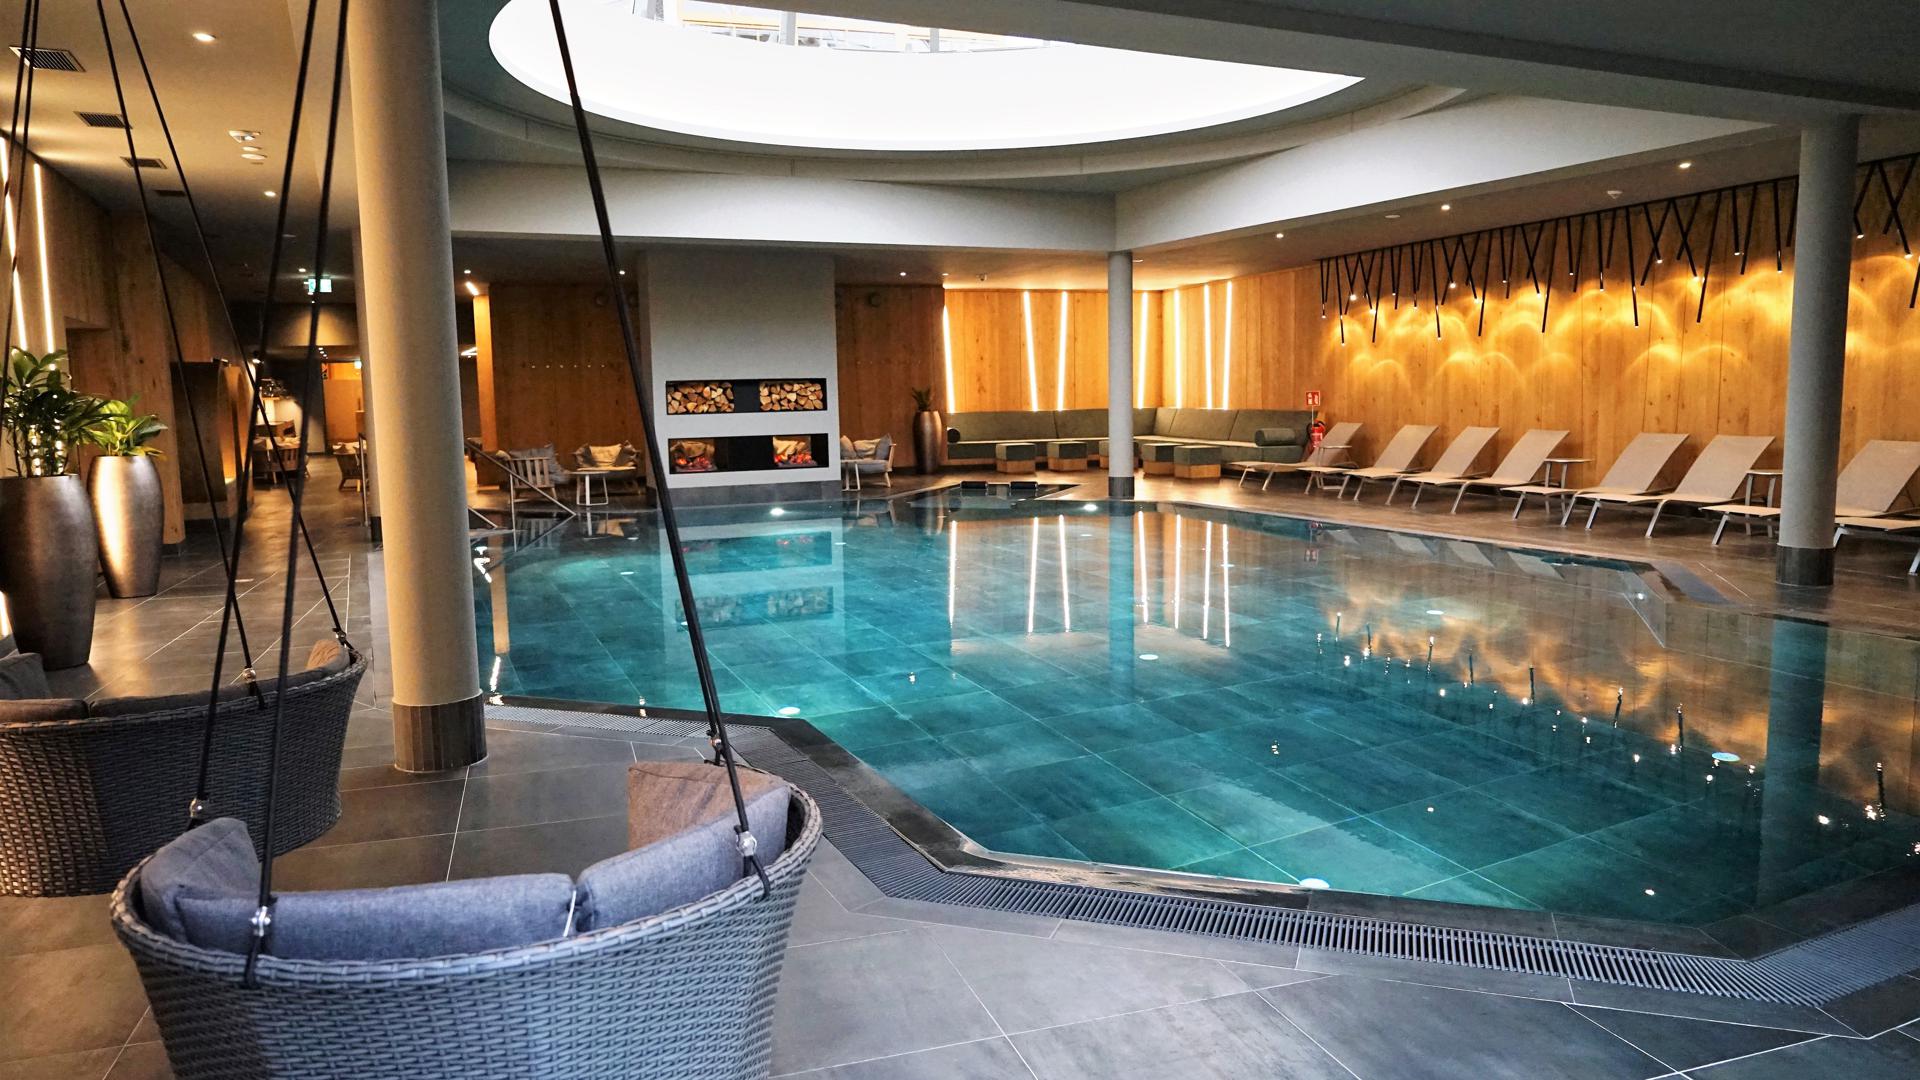 Swimming Pool und Liegestühle im Hotel-Wellnessbereich. 